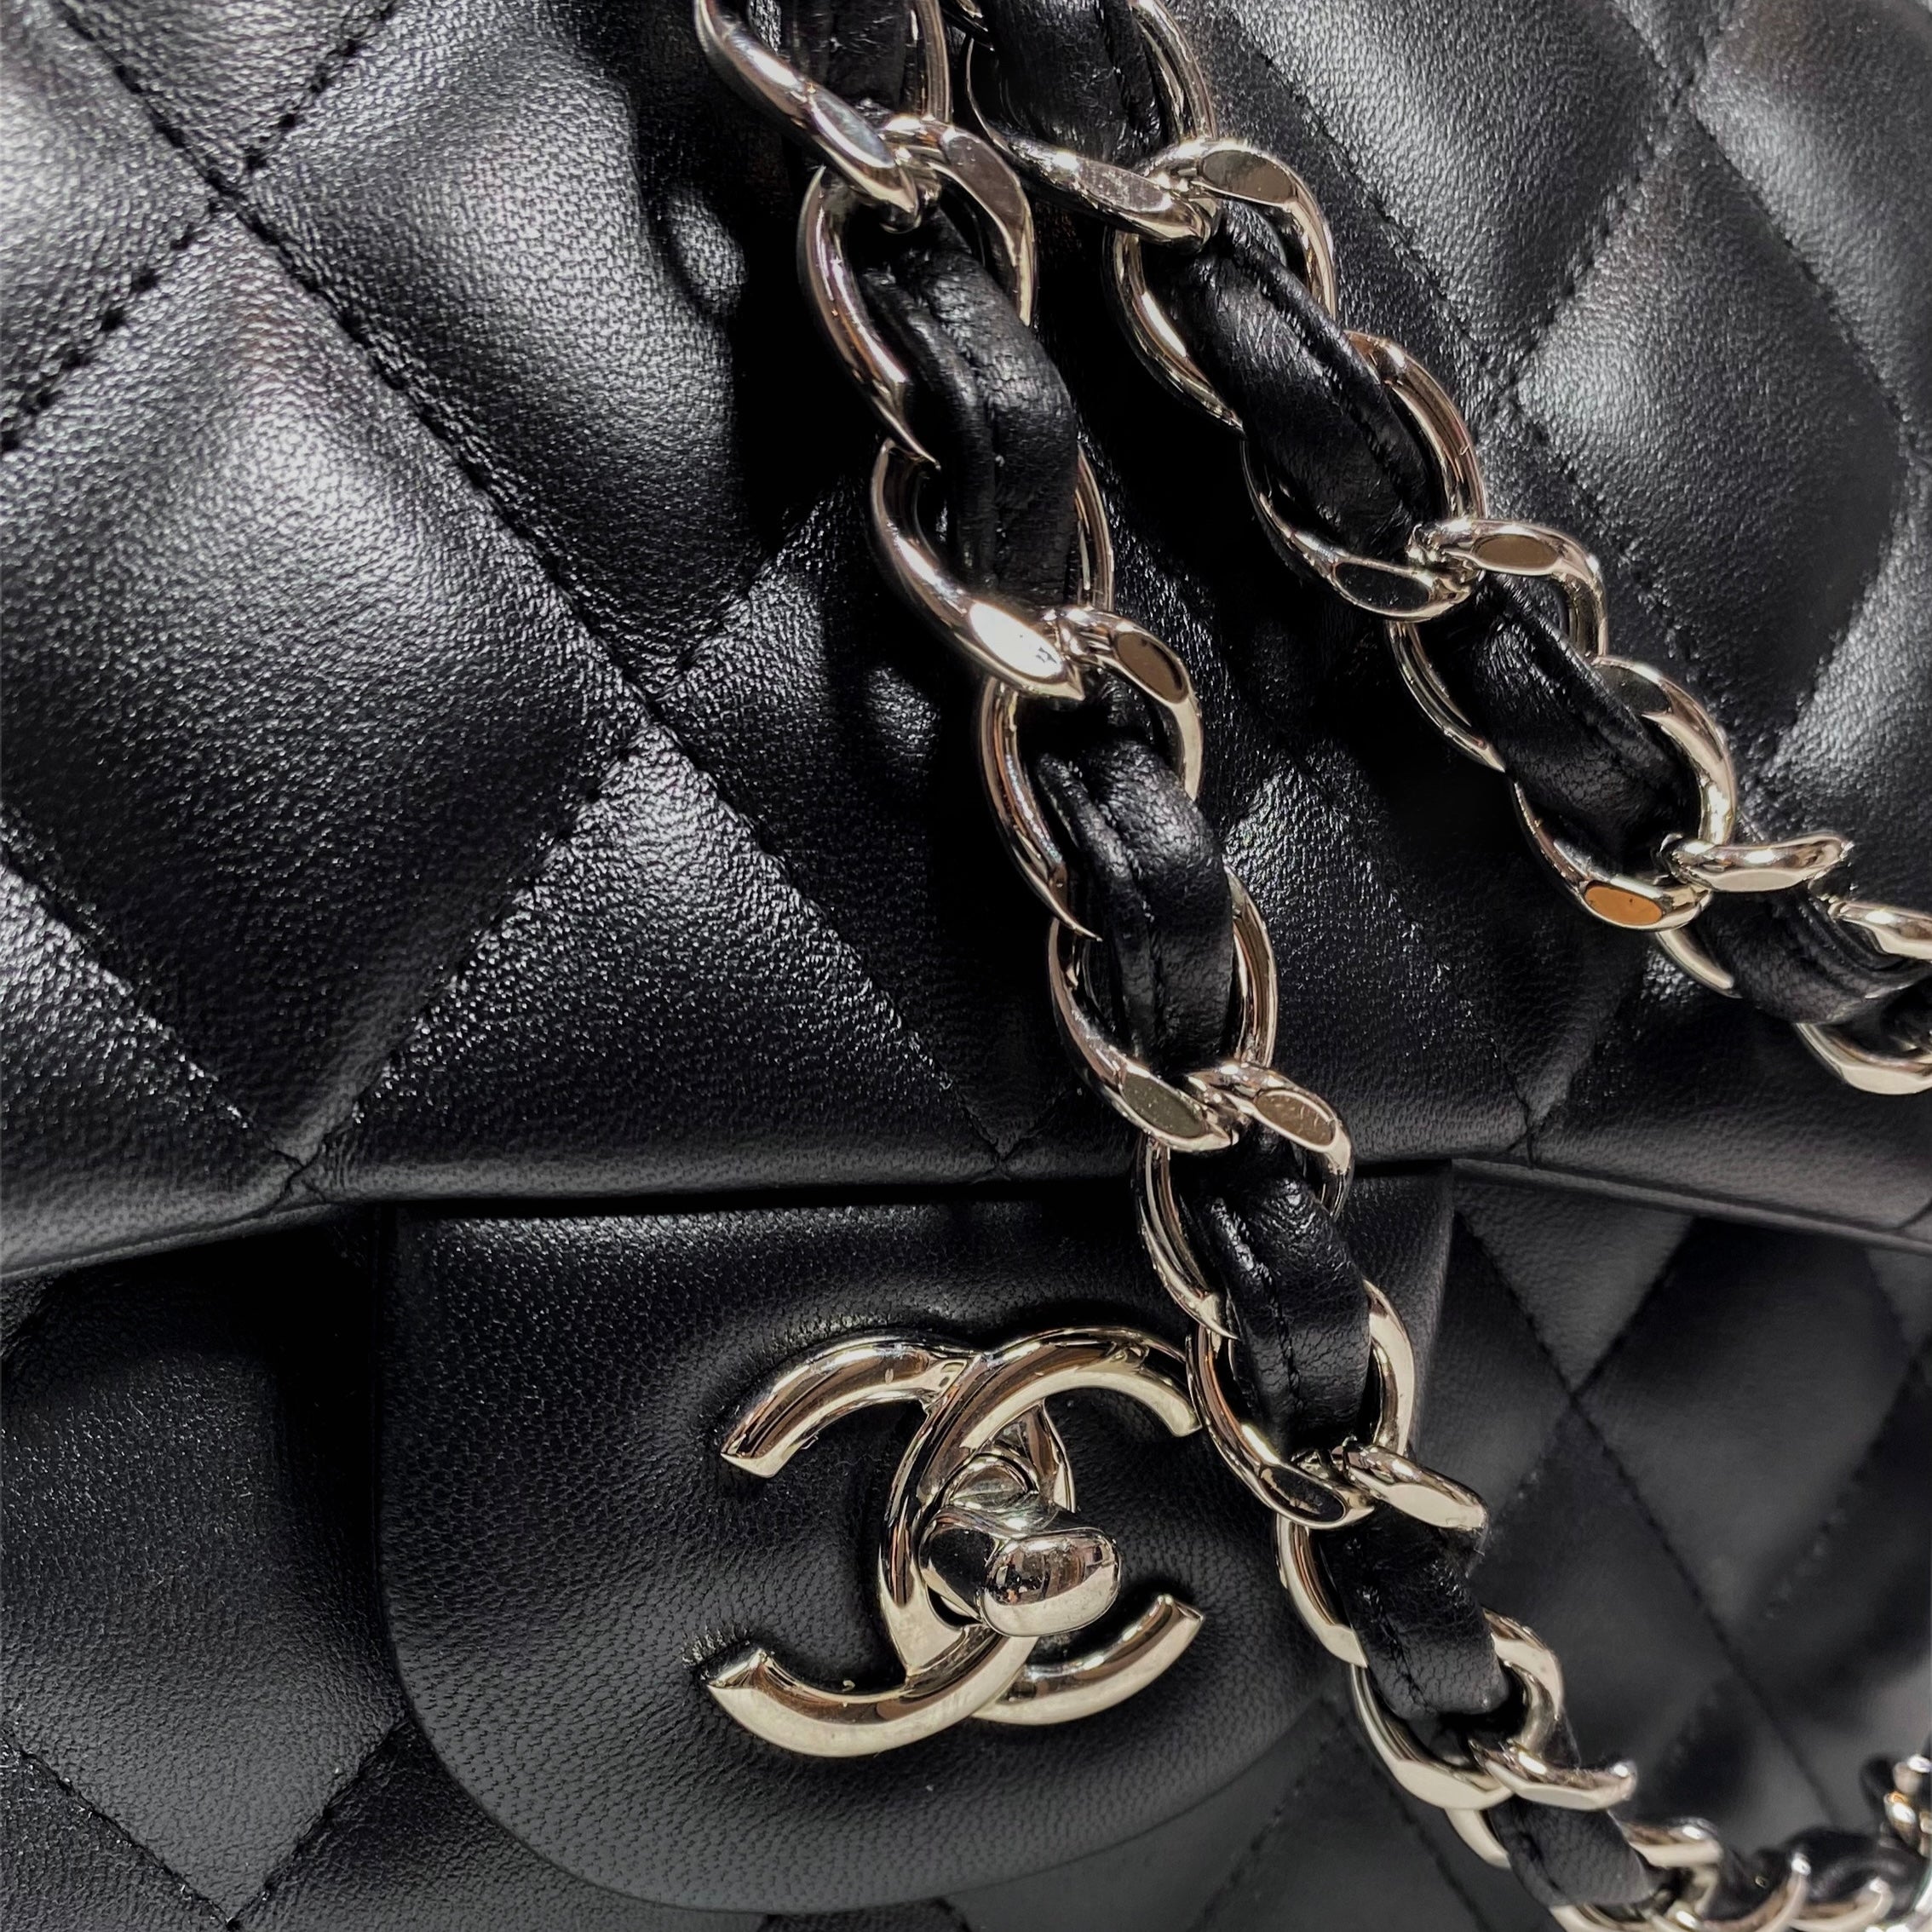 Chanel Black Jumbo Double Flap Bag